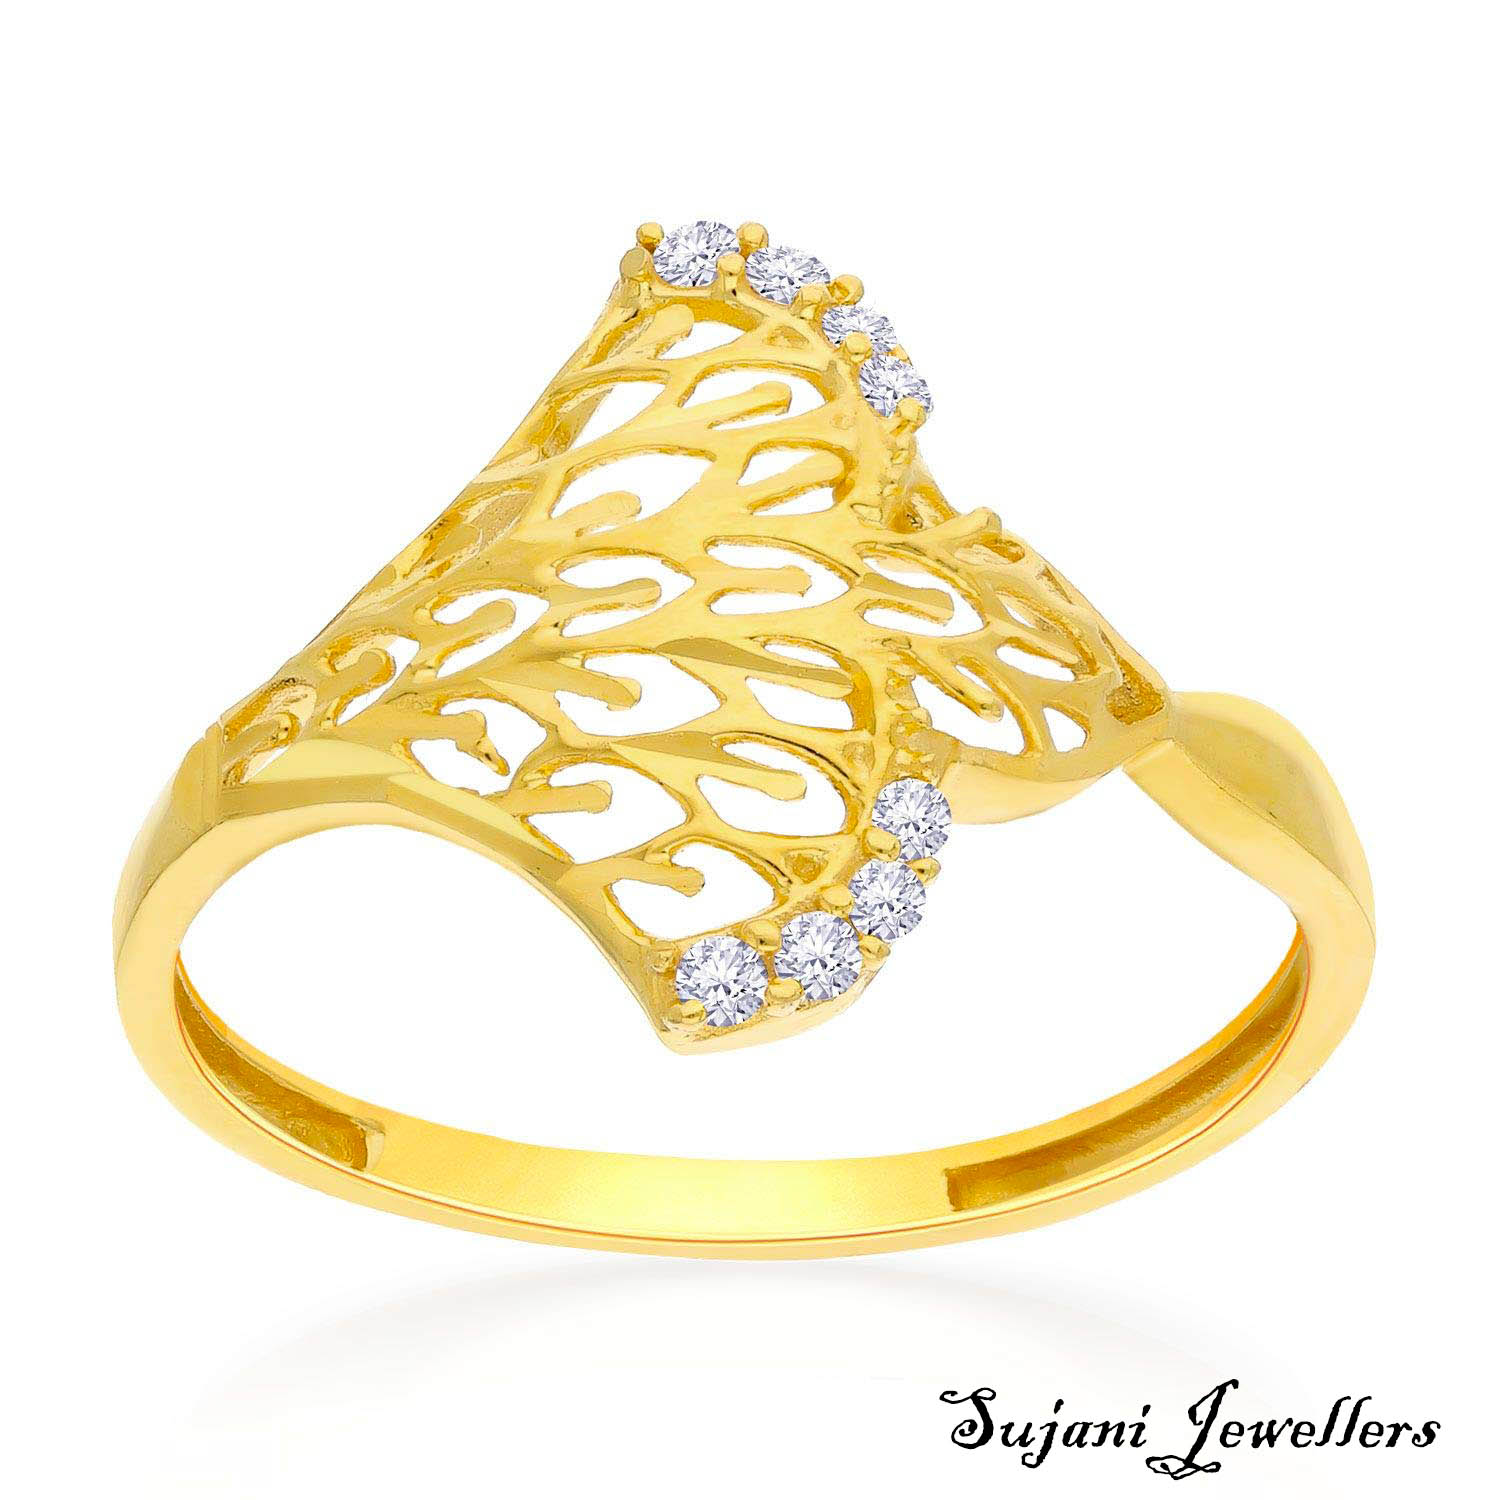 Reveal 168+ ladies gold ring design